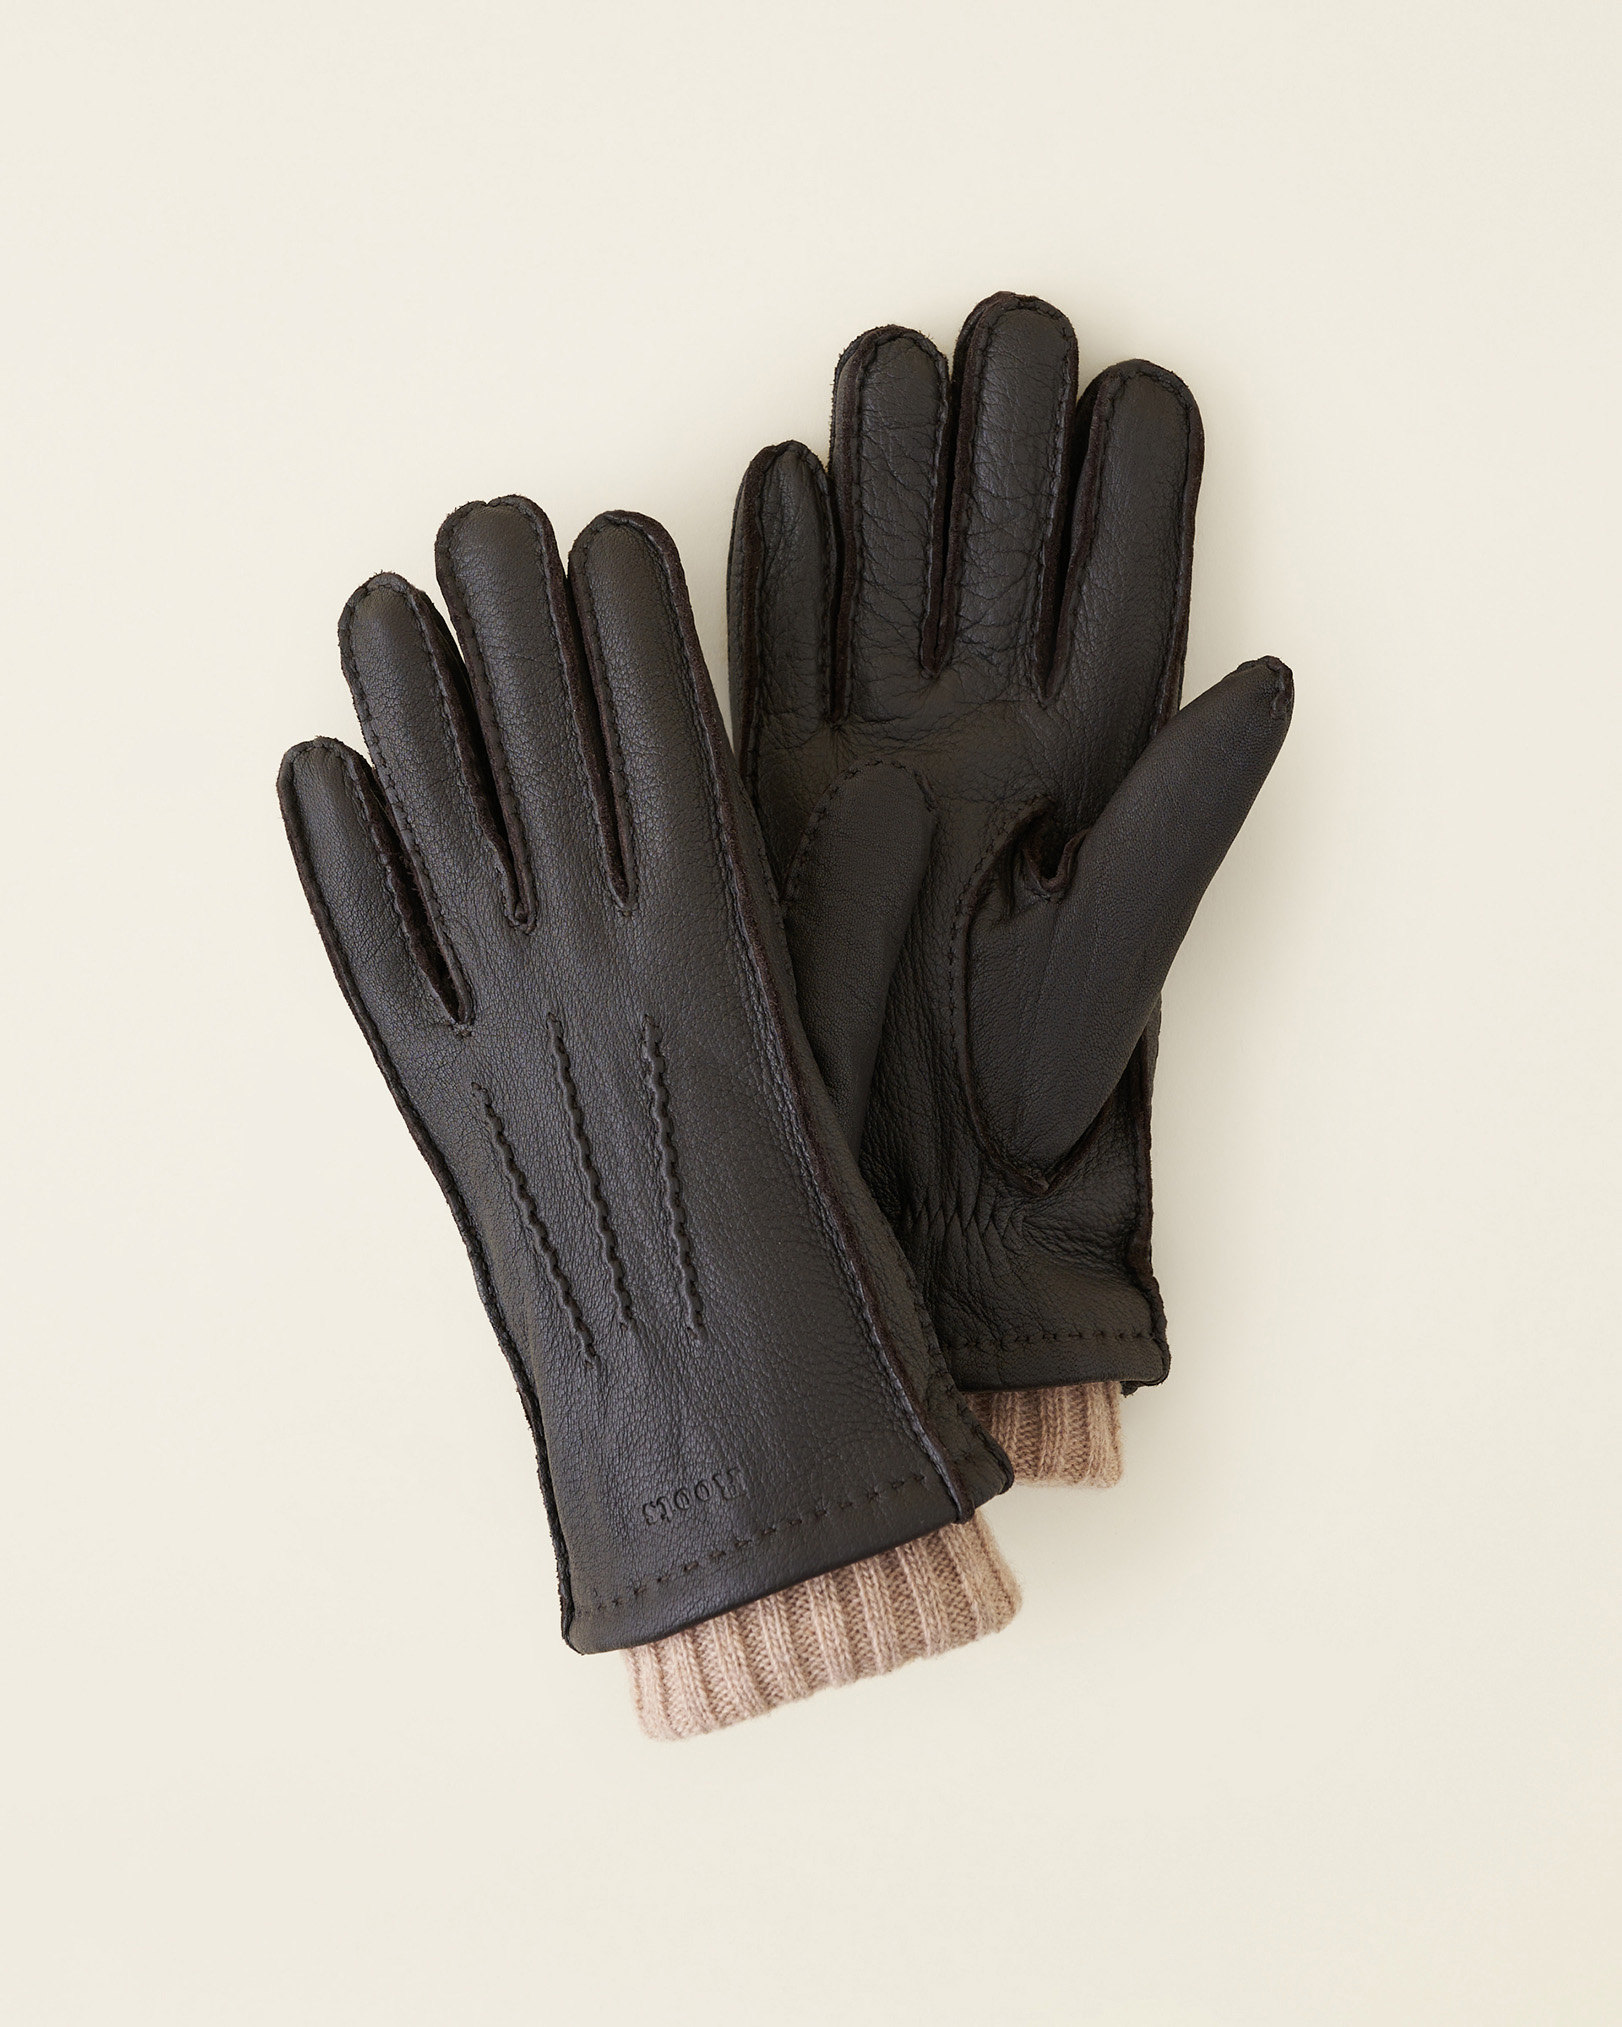 Roots Women's Cuff Deerskin Glove in Dark Brown